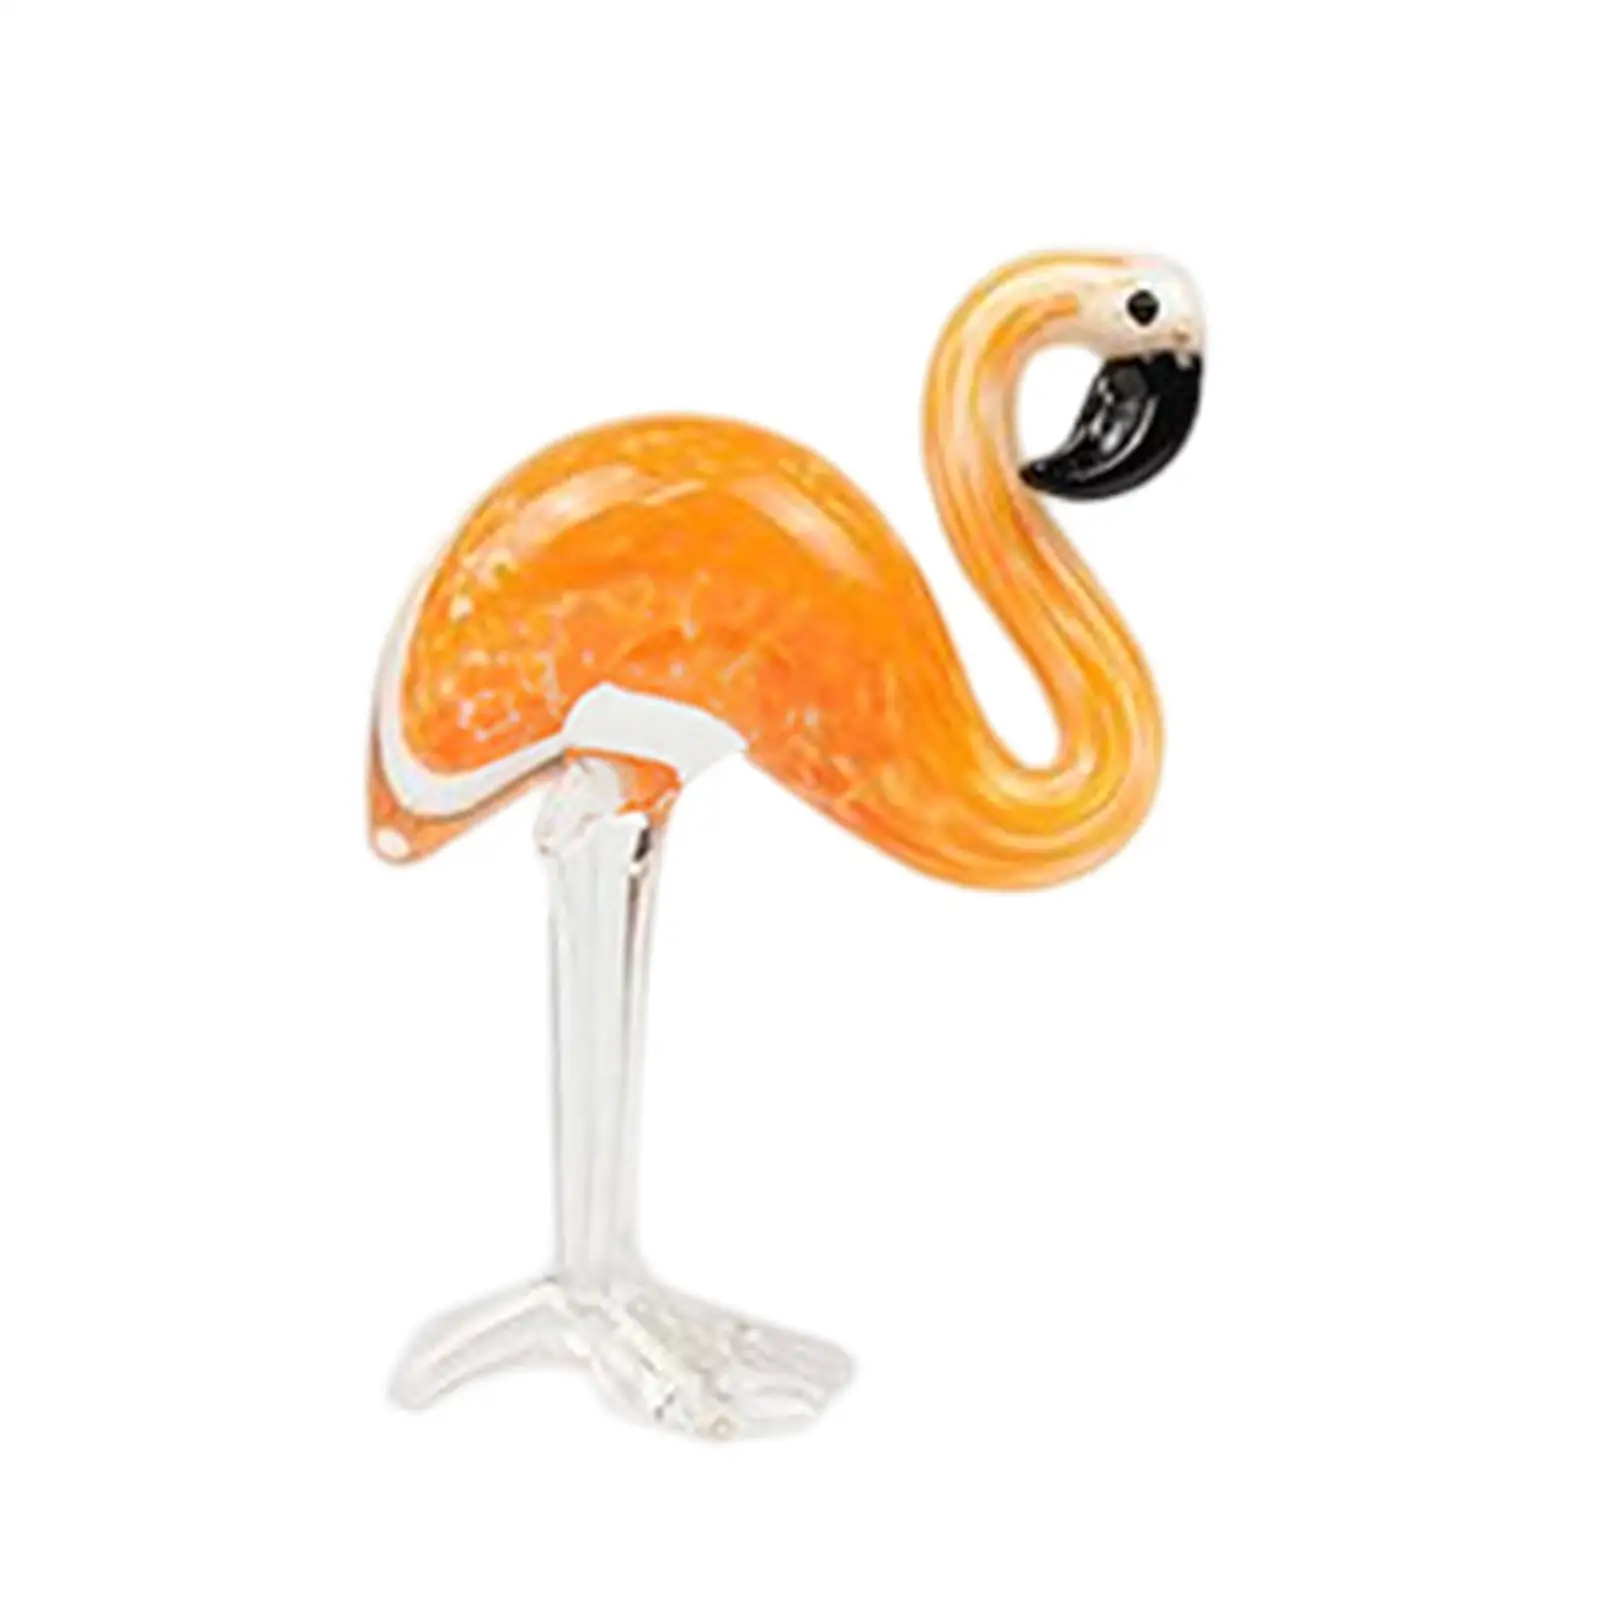 Glass Figurine Flamingo Christmas Ornament Souvenir Artwork for Night Stands